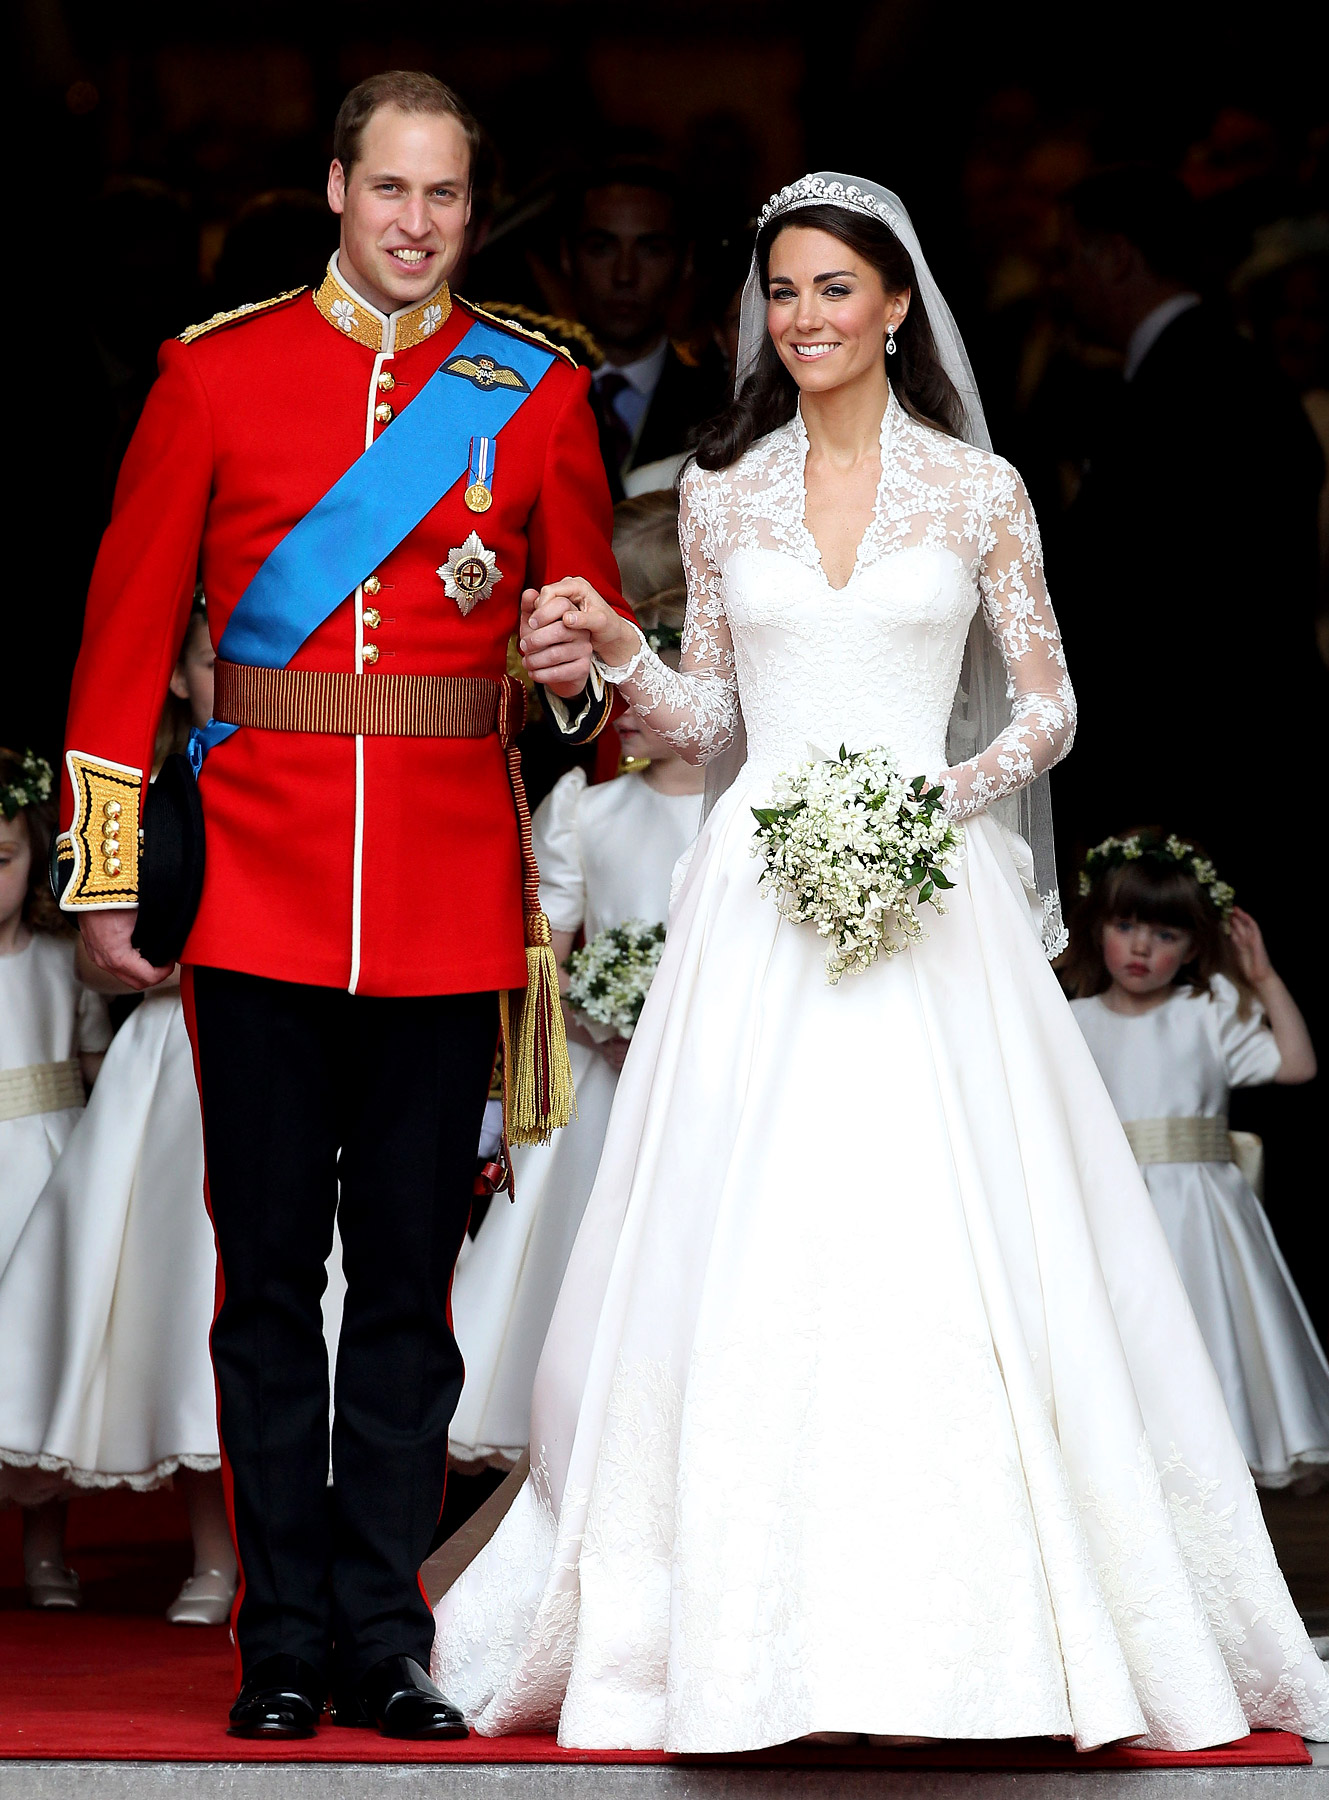 Catherine Middleton's Long Sleeve Wedding Dress